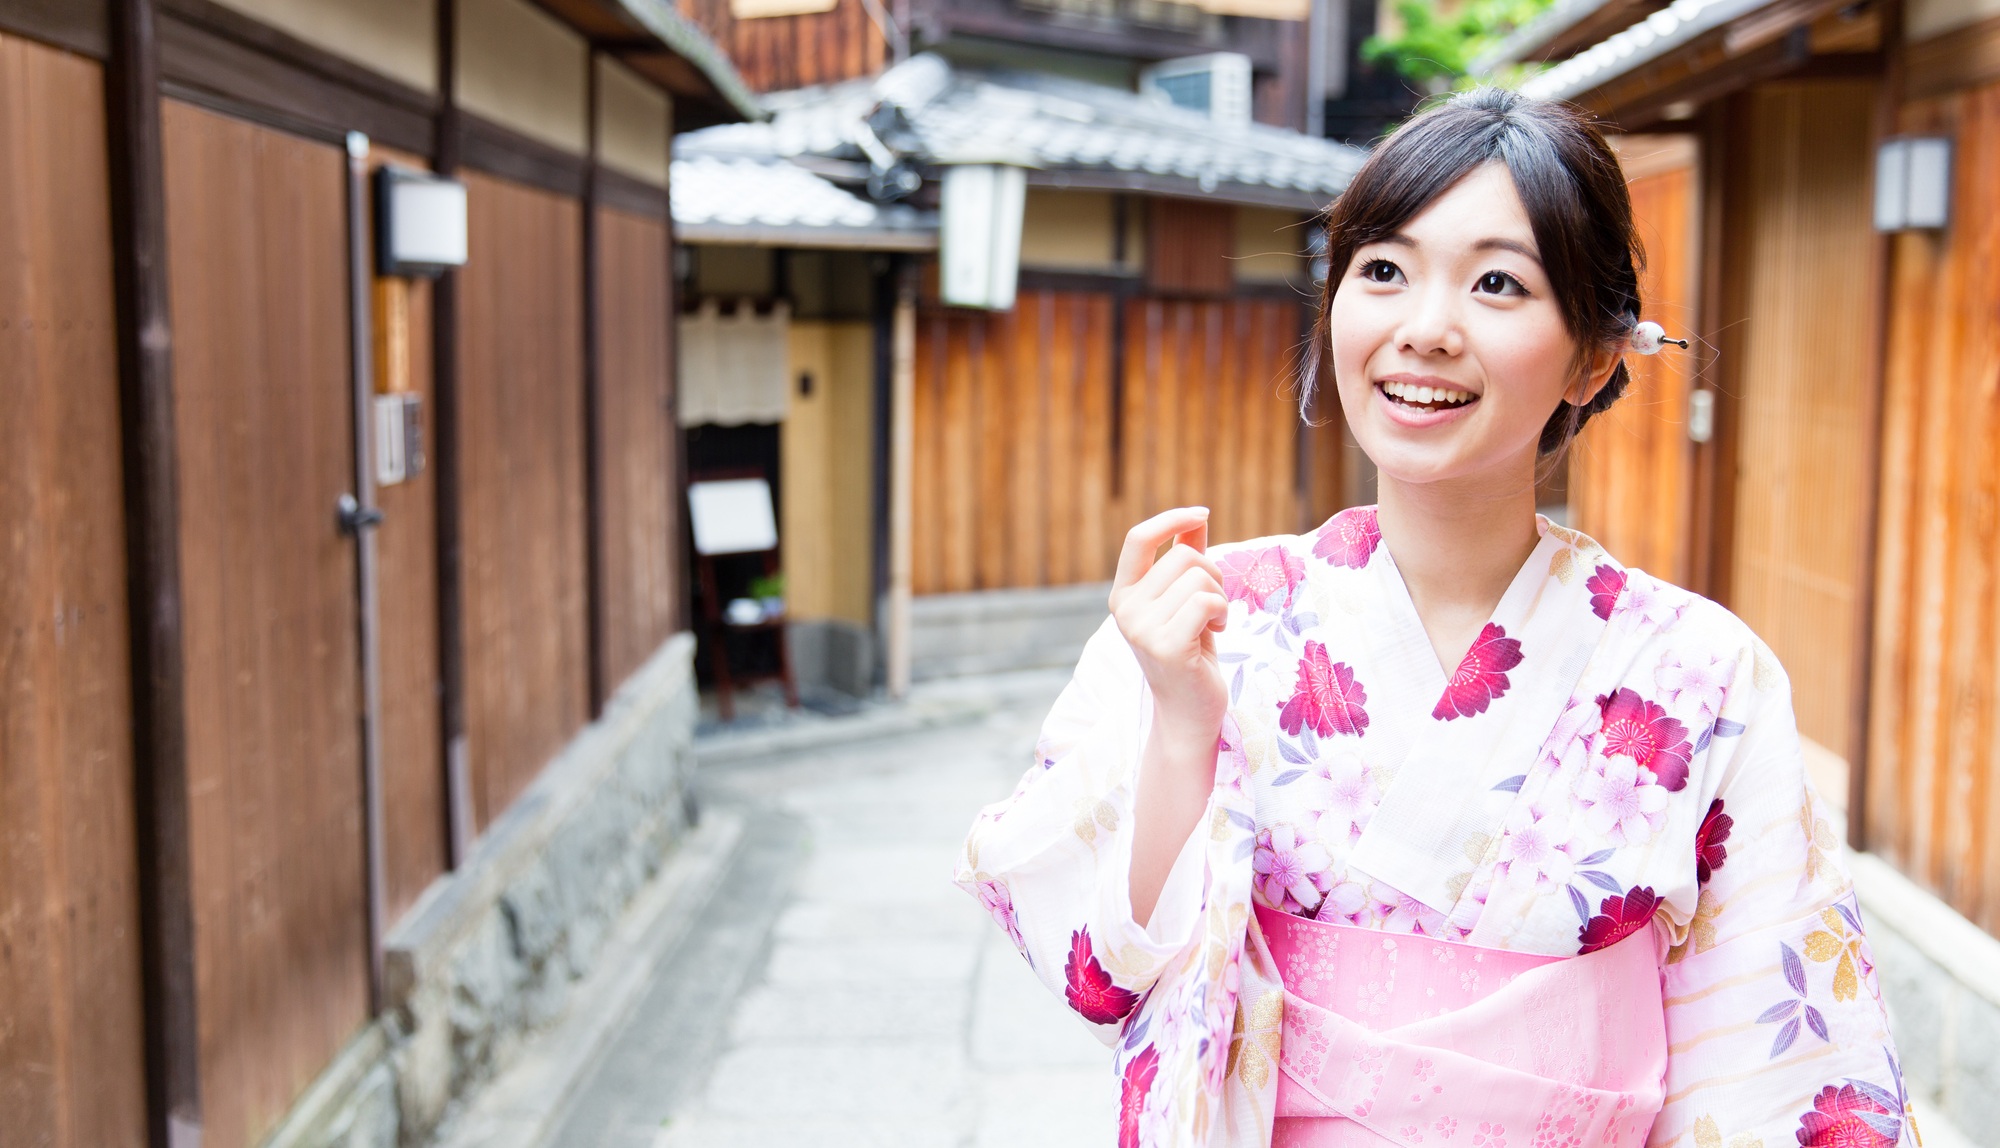 时尚与传统的融合 穿浴衣 游日本